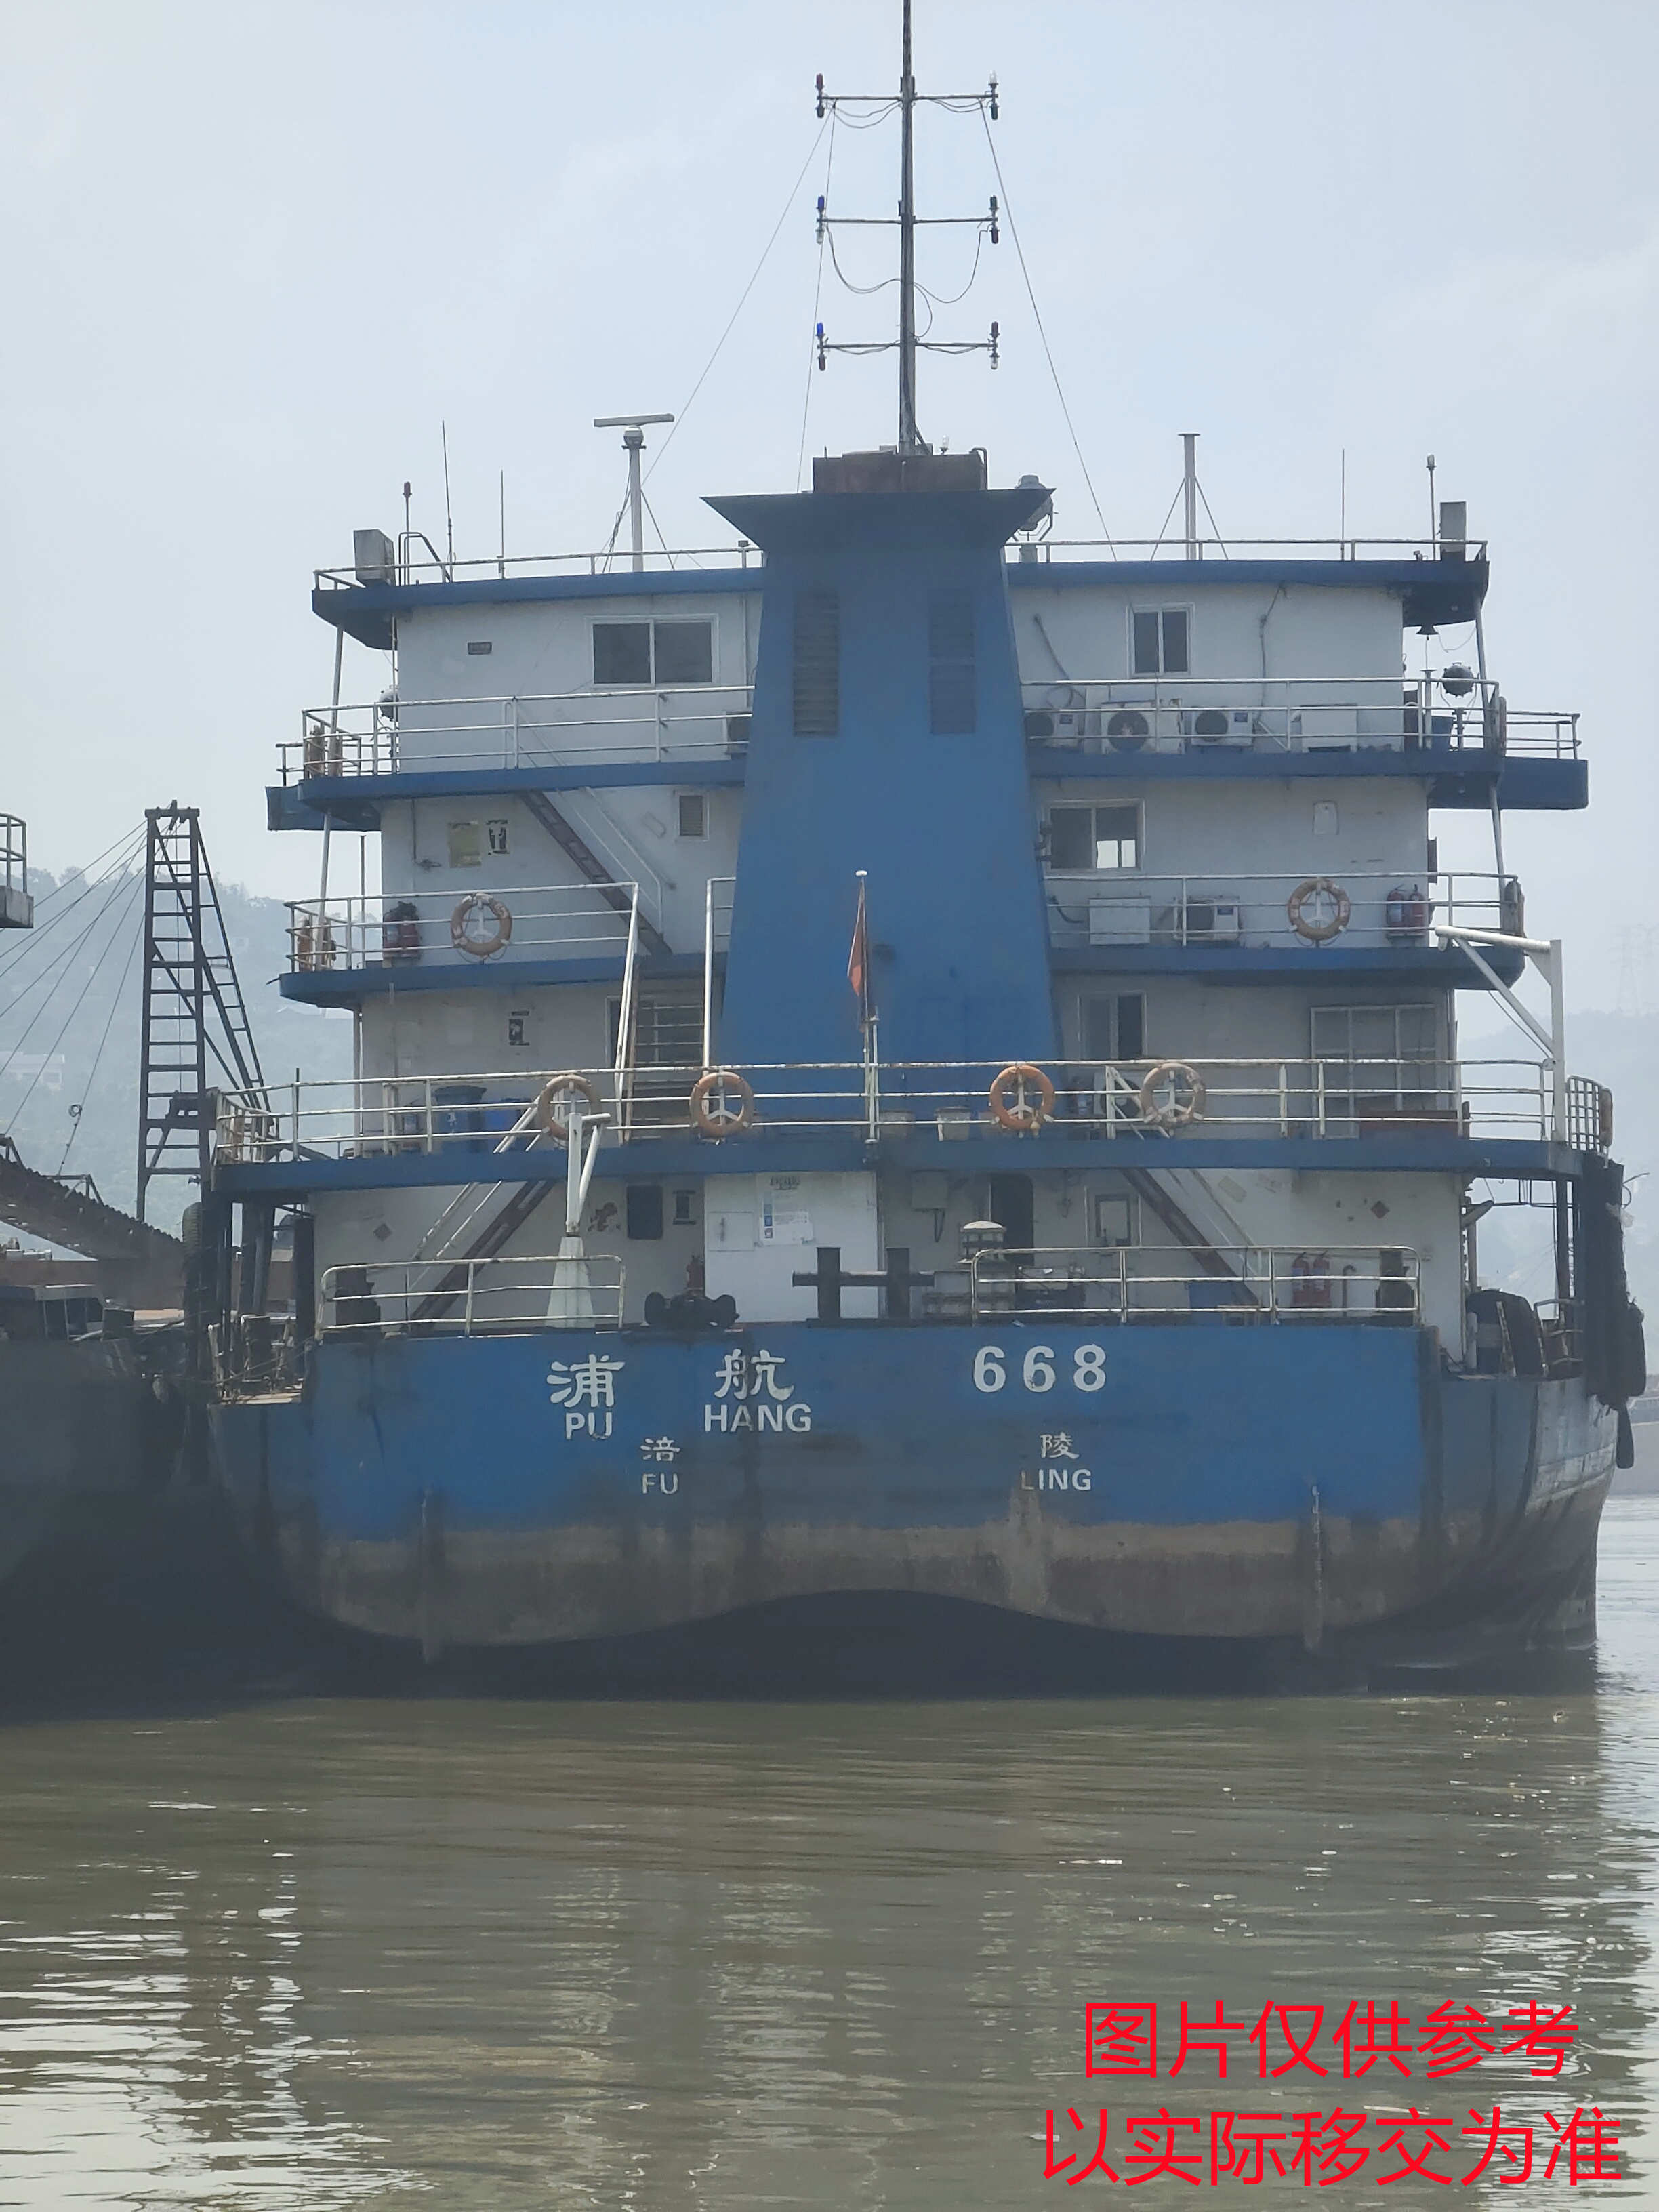 公司持有的“浦航668”散货船出售招标